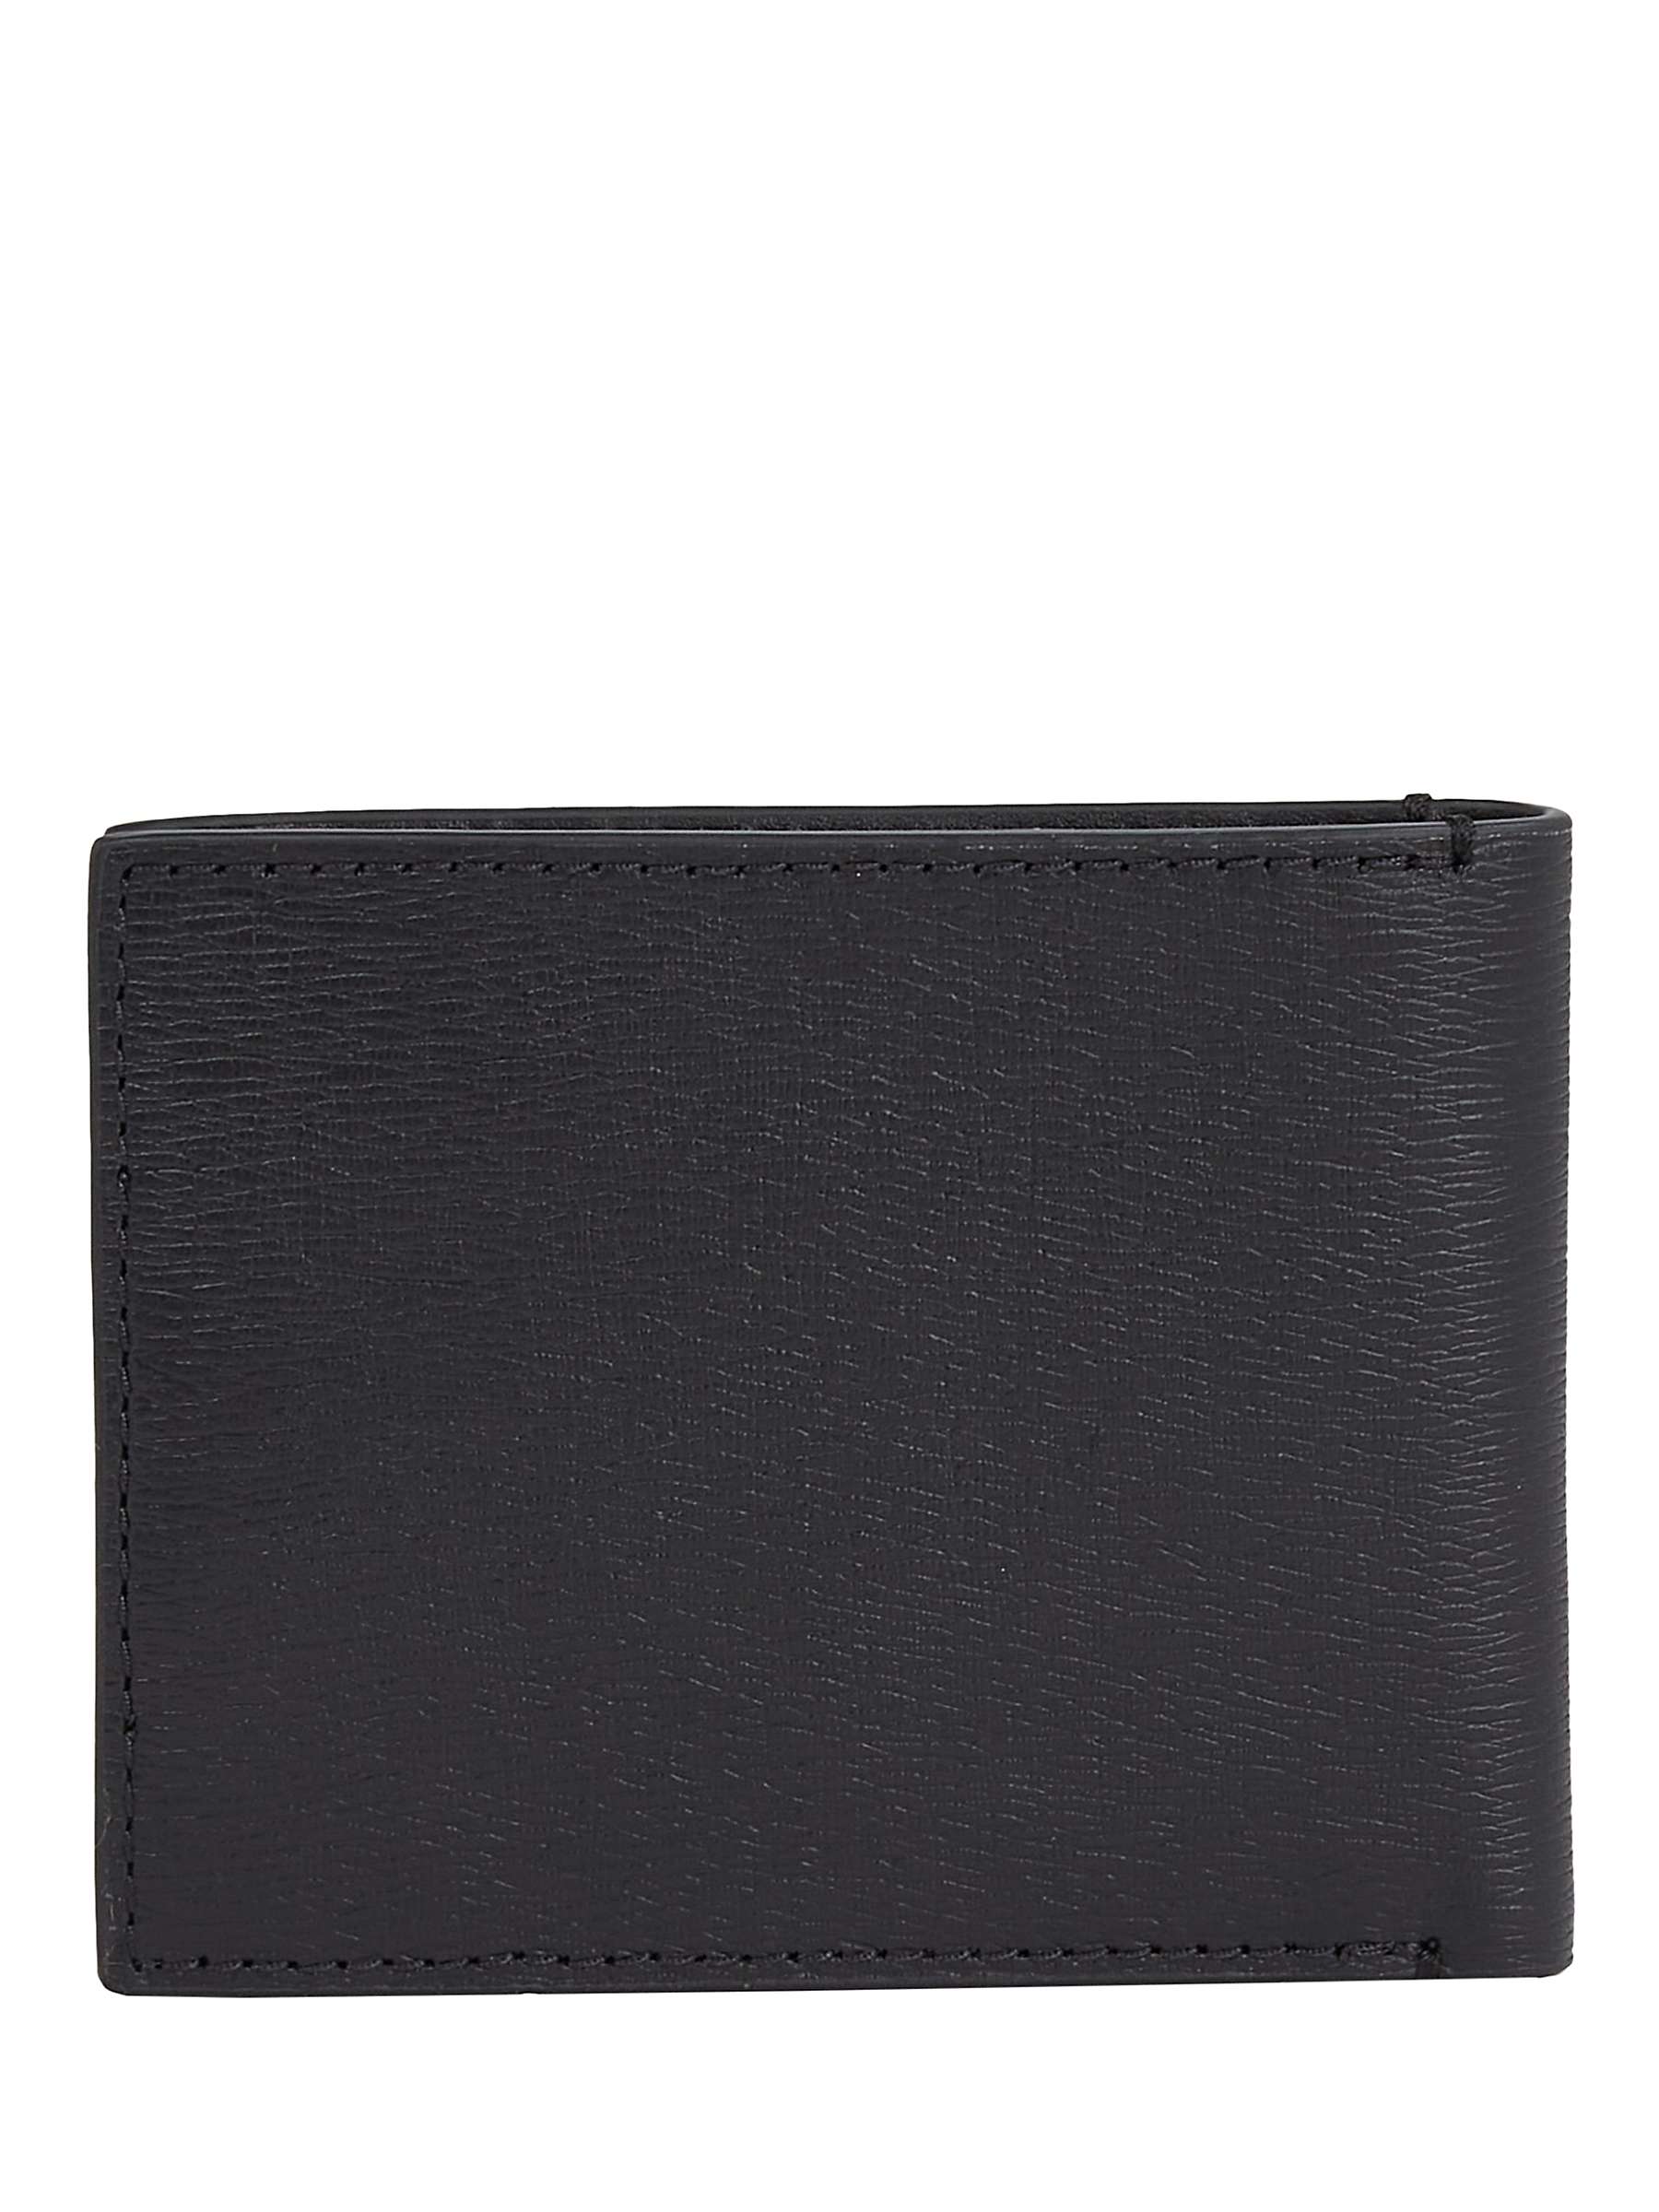 Calvin Klein Slim RFID Leather Bifold Wallet, Black at John Lewis ...